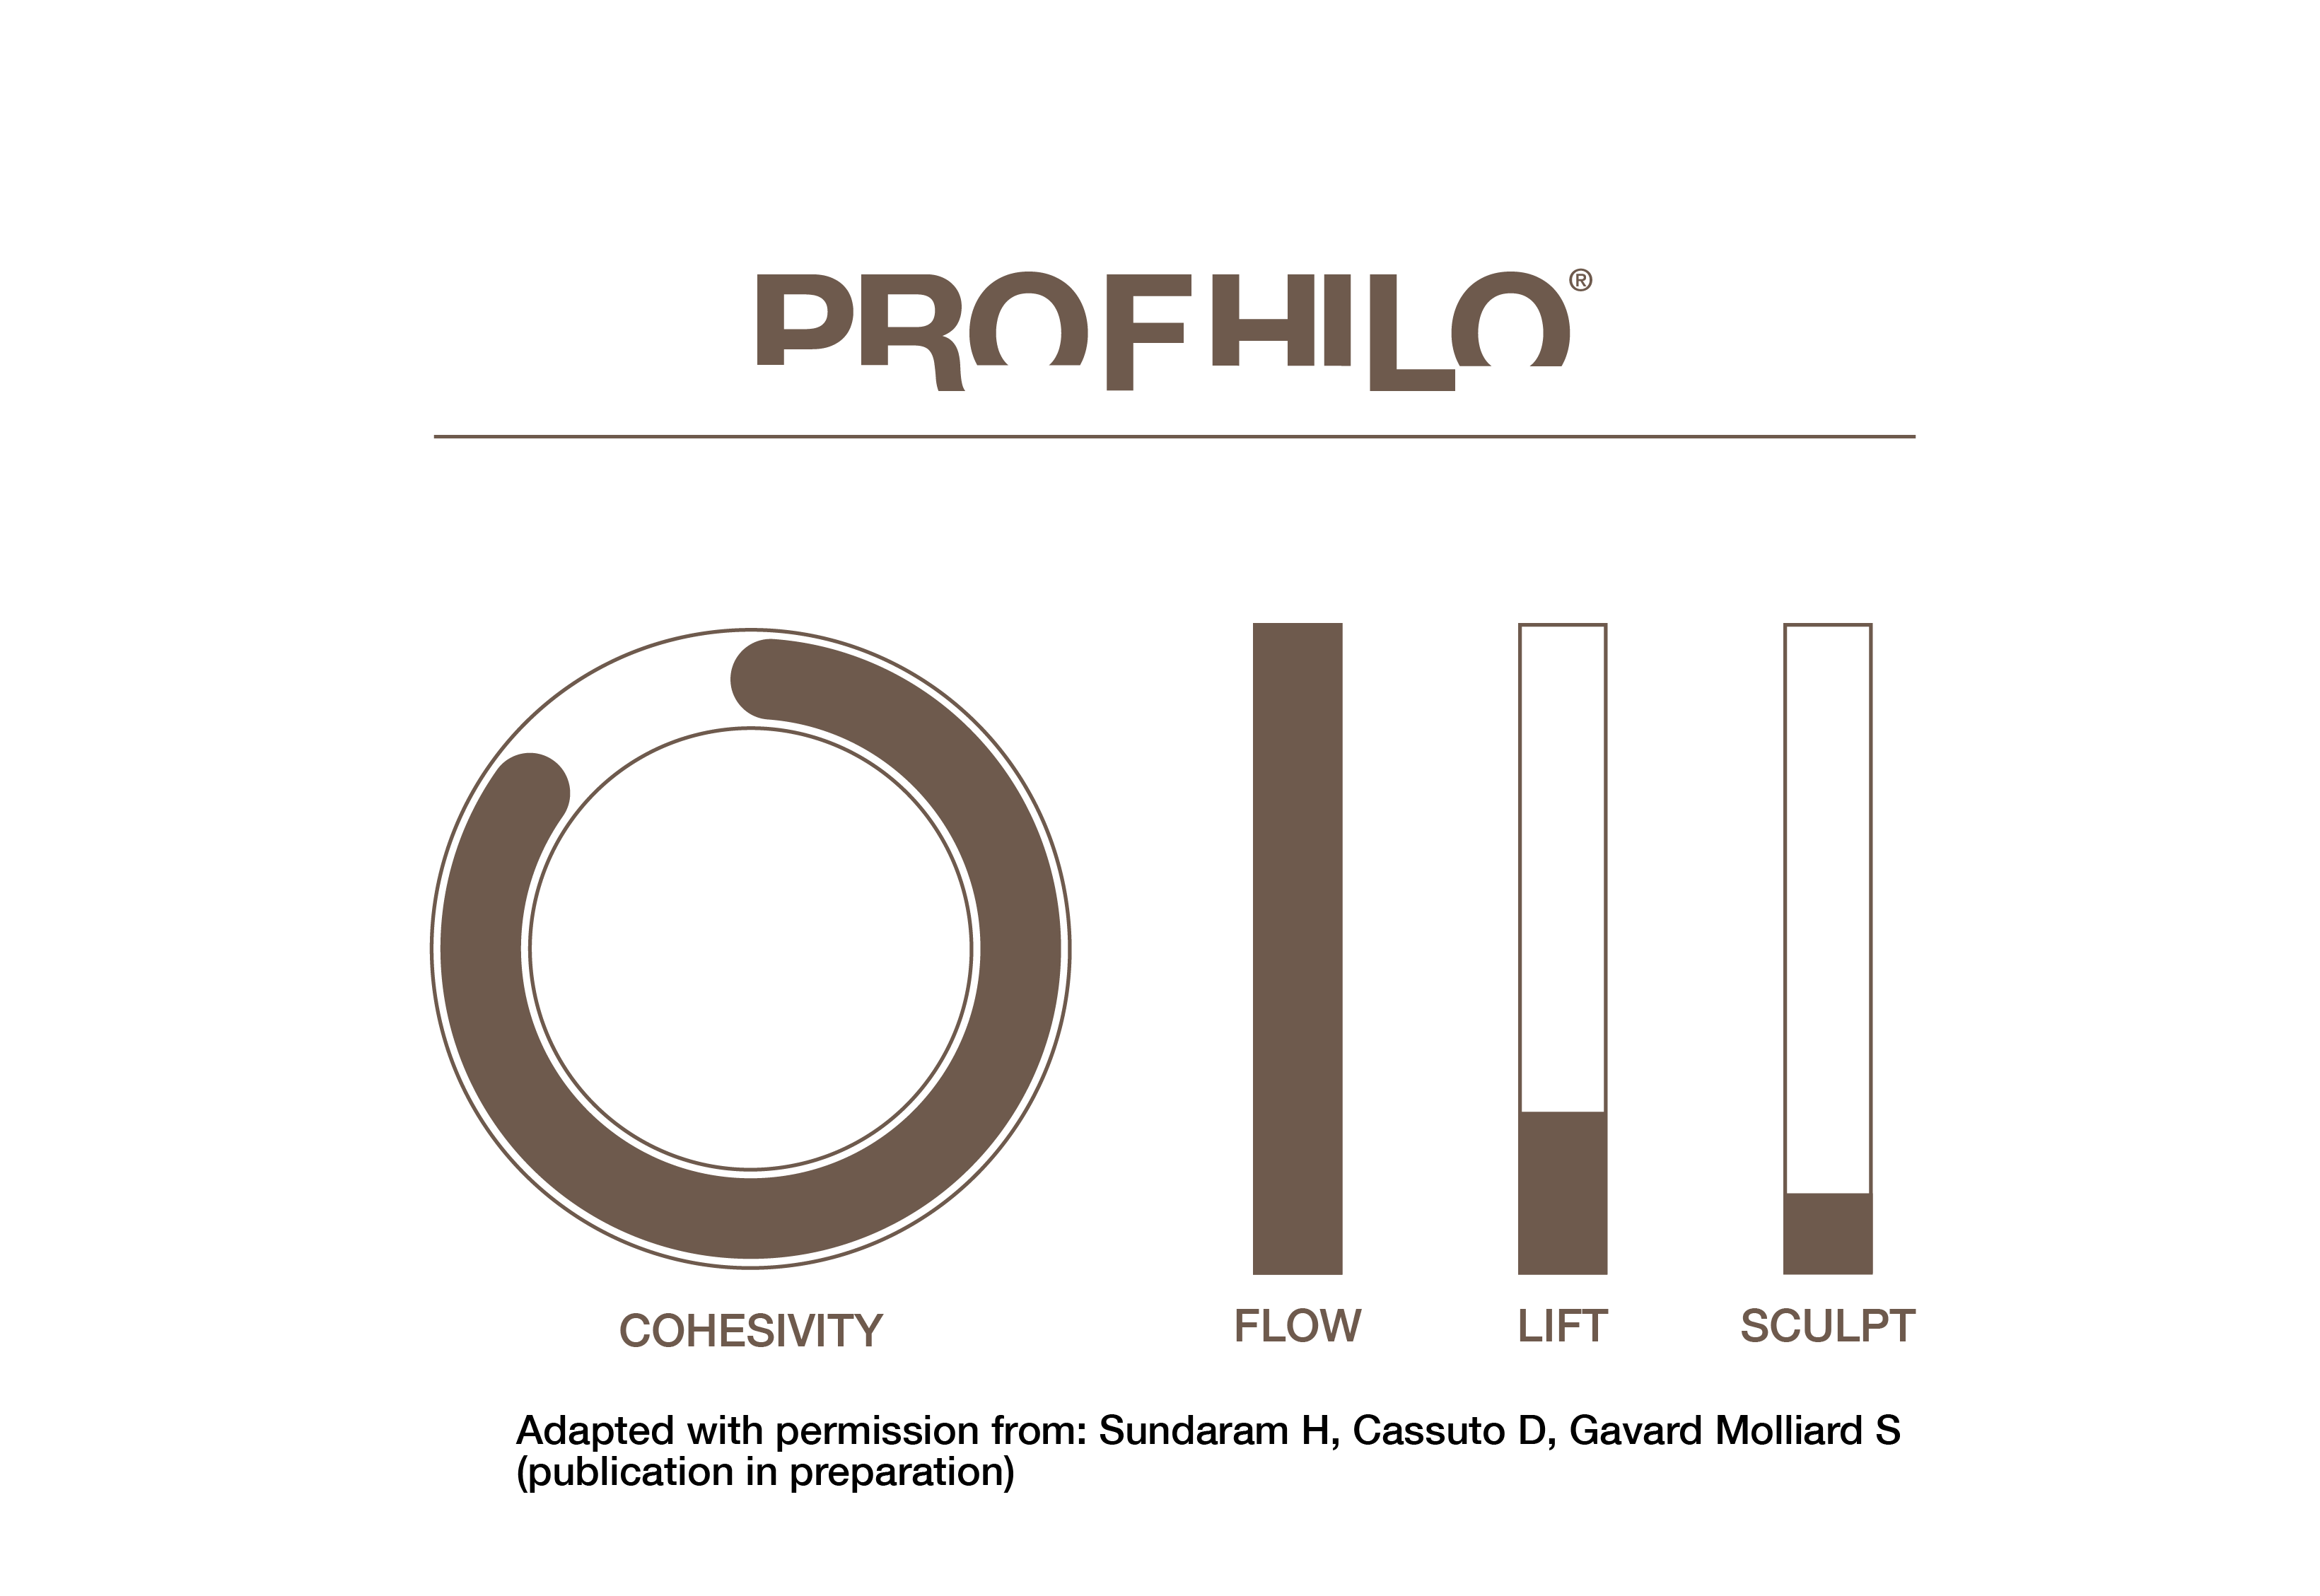 PROFHILO_gps_scale 2